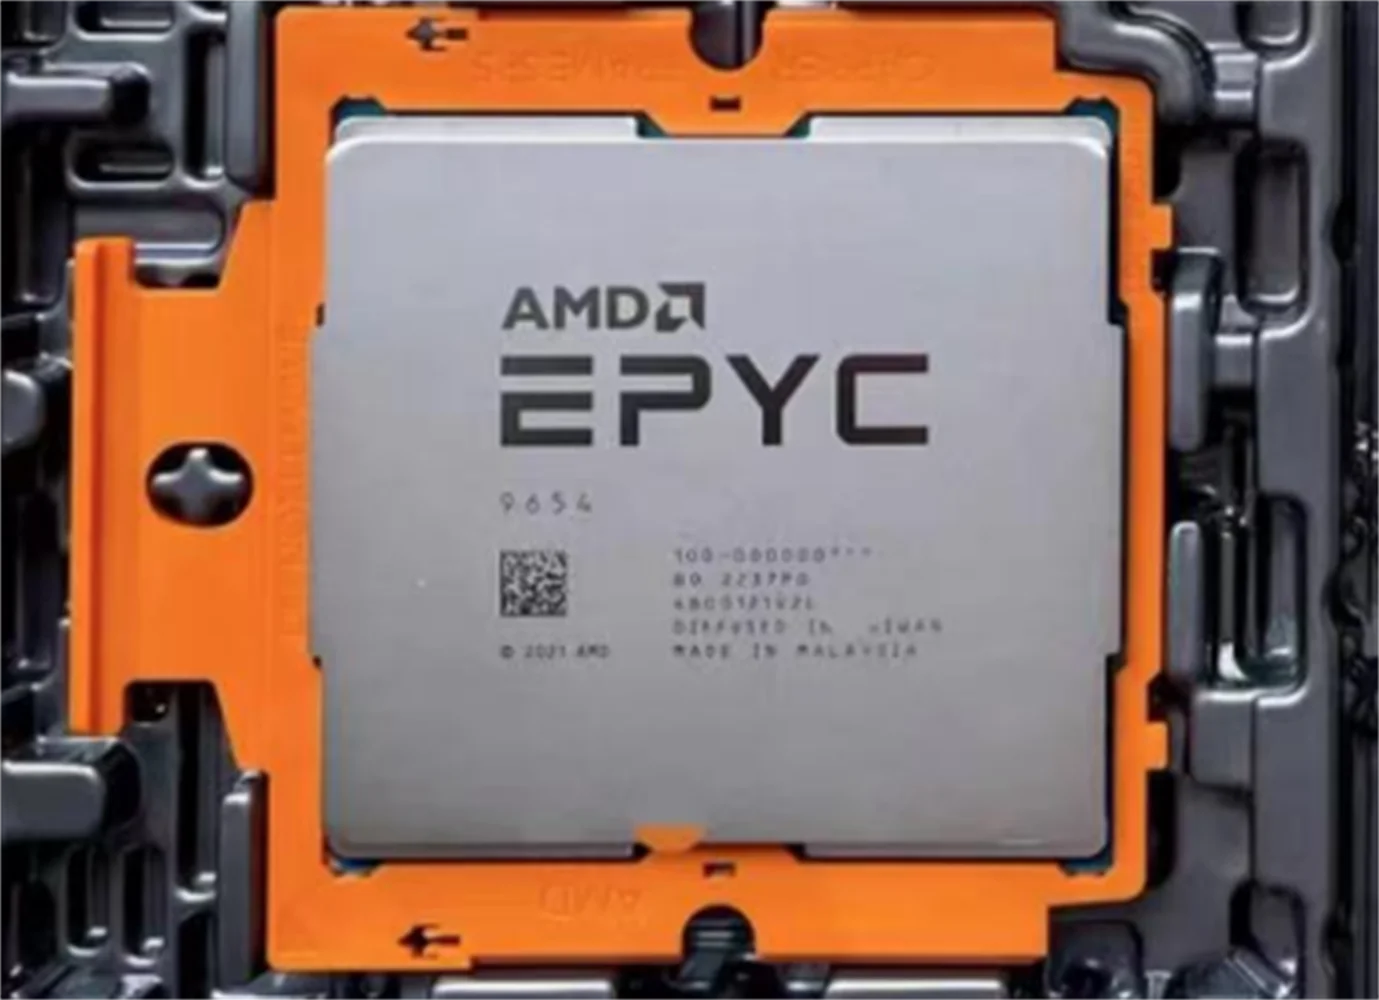 Серверный процессор AMD EPYC 9654P 2,4 ГГц с 96 ядрами/192 потоками Кэш-памяти L3 384 МБ TDP 360 Вт SP5 До 3,55 ГГц серии 7004